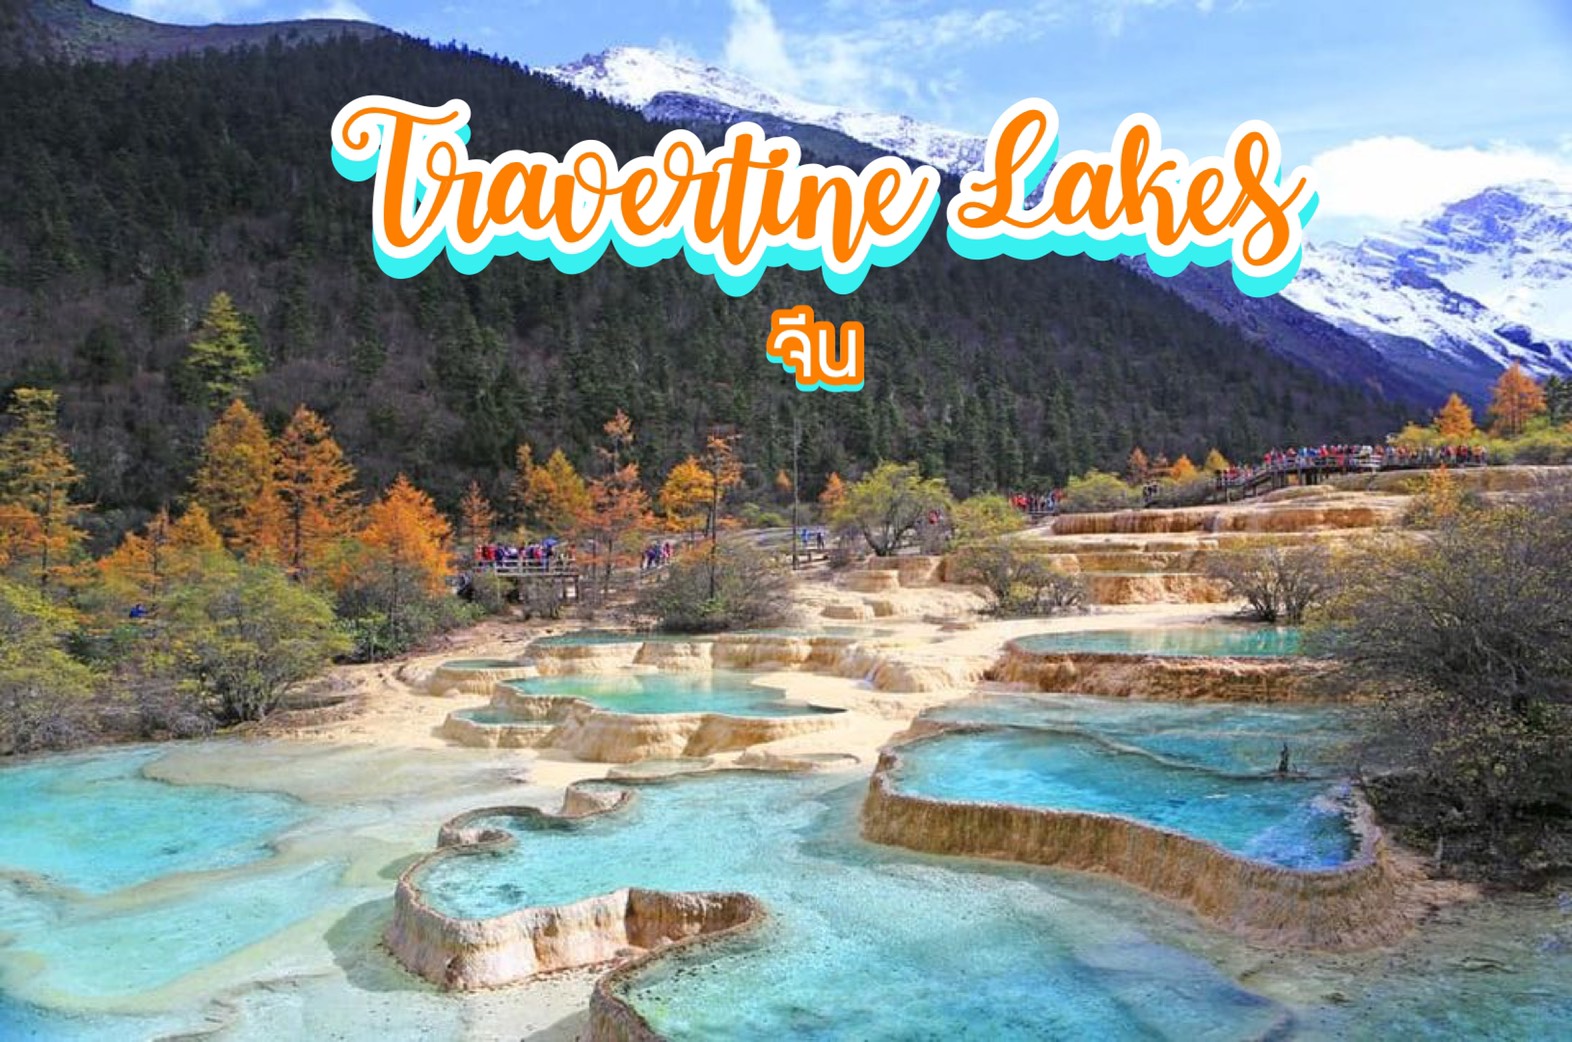 ทะเลสาบทราเวอร์ทีน Travertine Lakes จีน